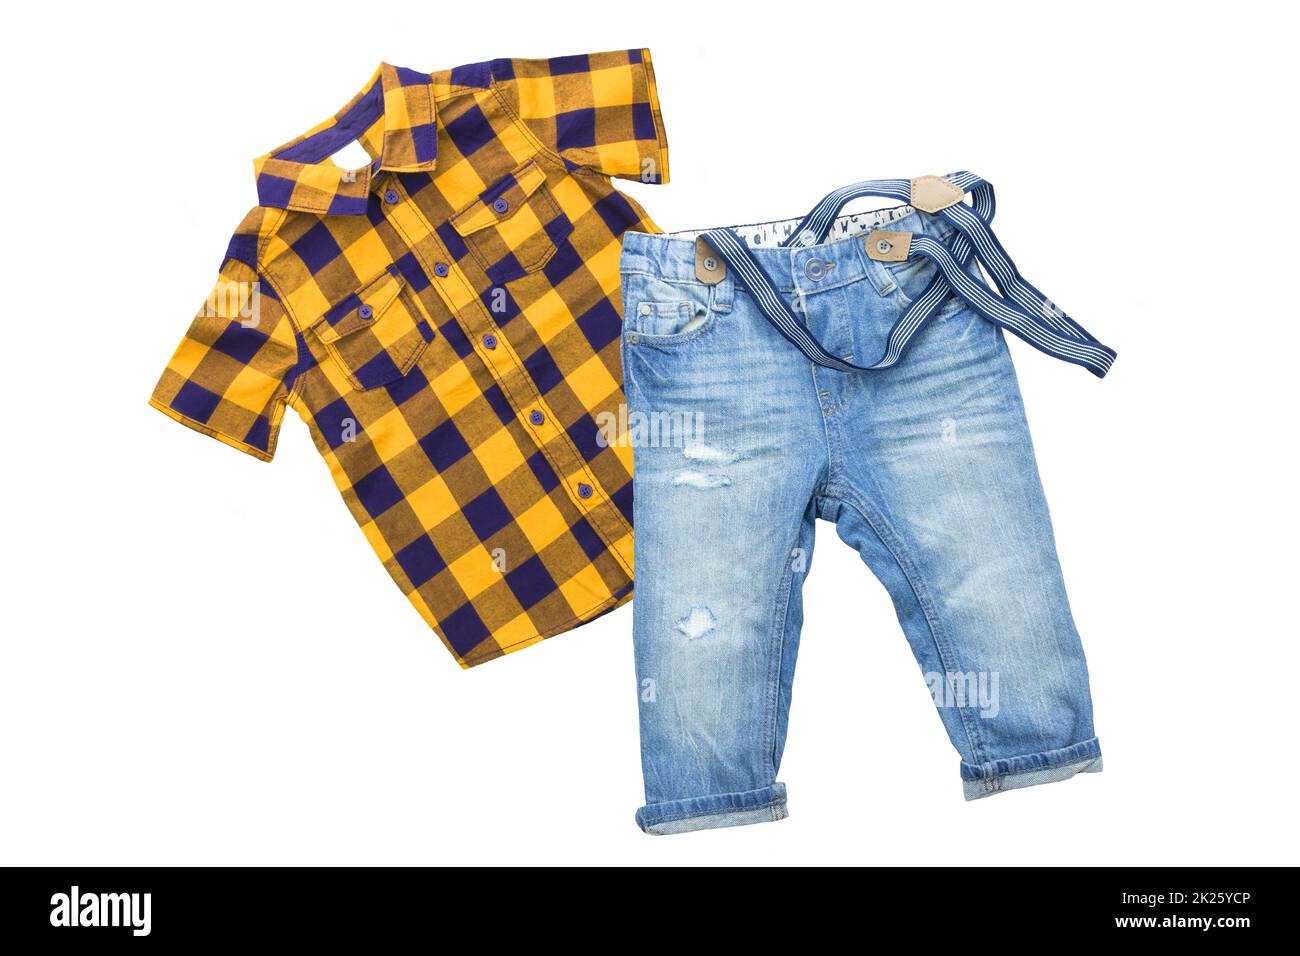 Modische blaue Jeans mit Hosenträgern oder Hosenträgern für den Jungen und ein gelb-blaues Karohemd mit kurzen Ärmeln, isoliert auf weißem Hintergrund. Sommerkleidung für Kinder. Stockfoto